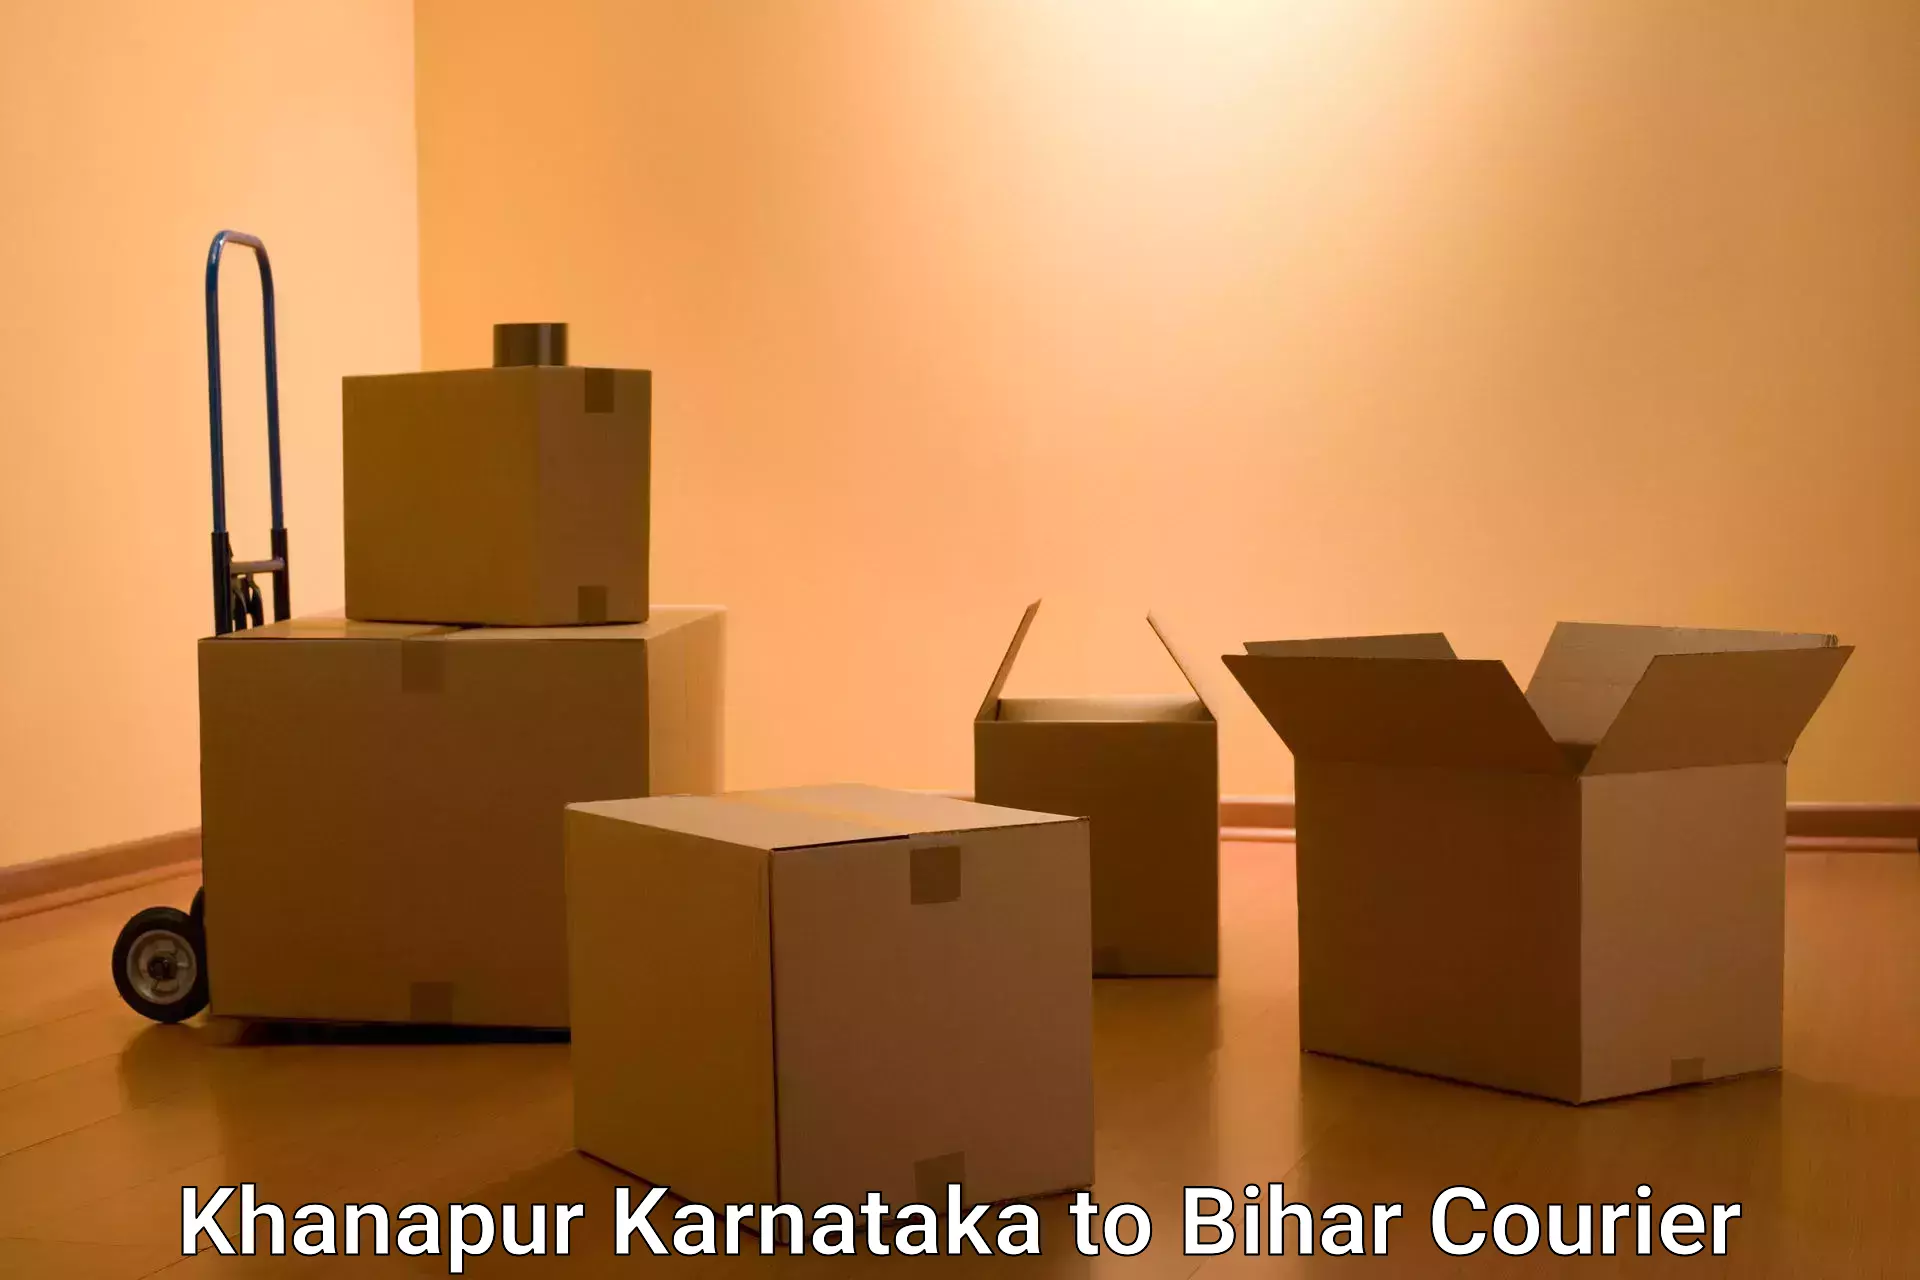 Multi-city courier Khanapur Karnataka to Bhagalpur